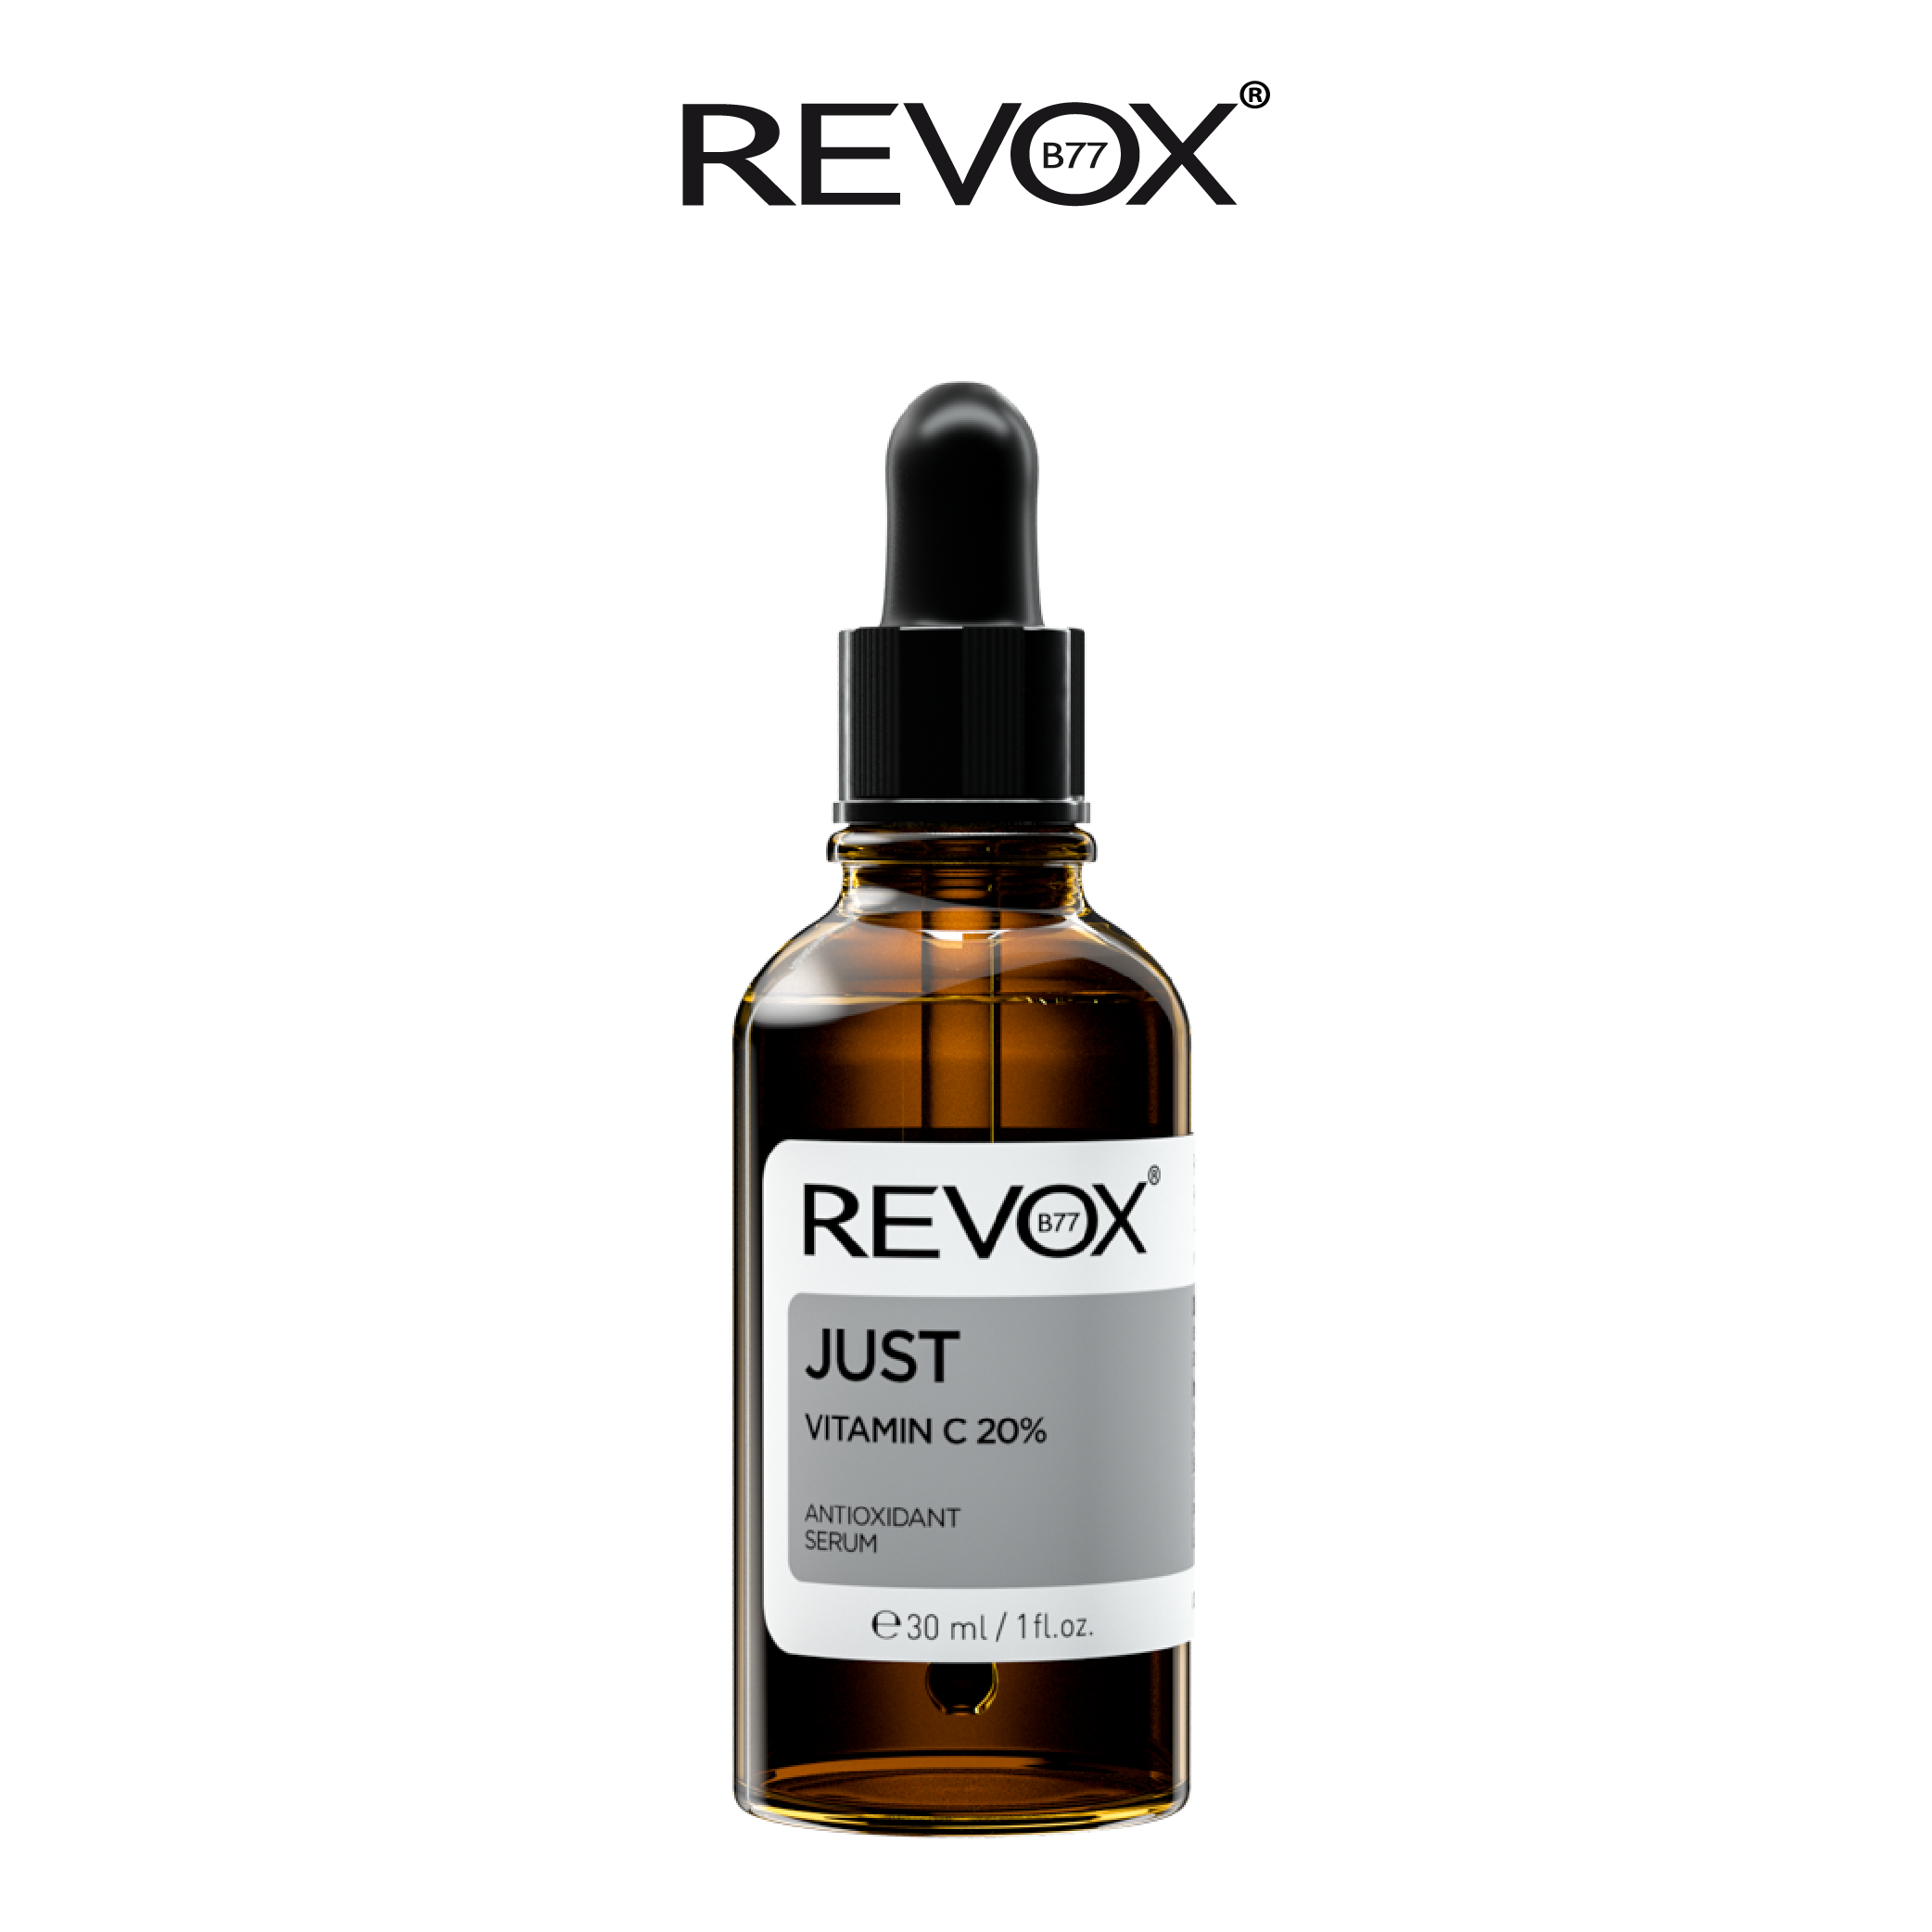 Serum ngăn ngừa Oxy hóa làm sáng da cho mặt và cổ Revox B77 Just - Vitamin C 20%